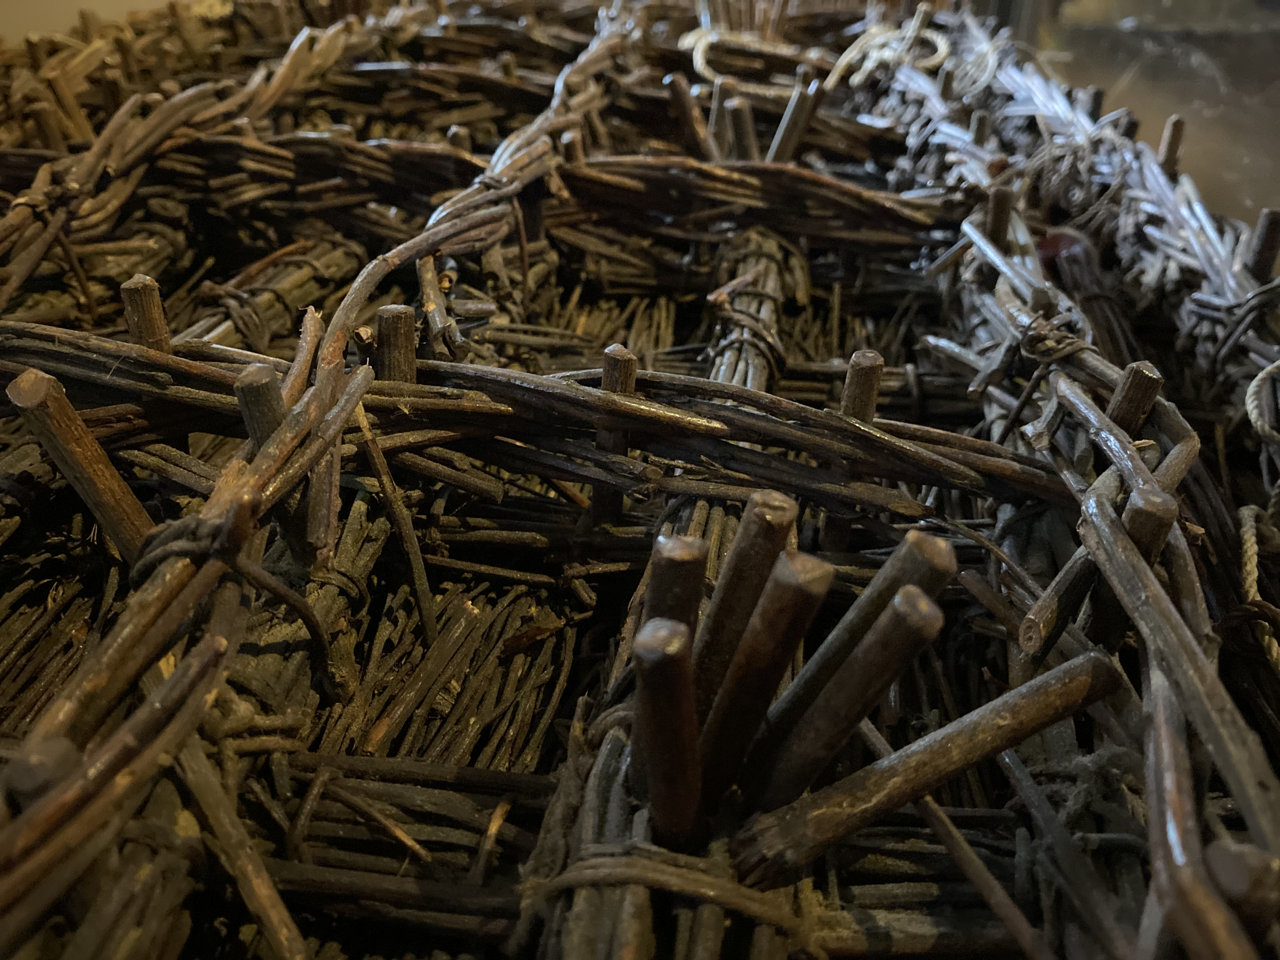 Een zinkstuk is een volledig uit wilgenhout opgebouwde mat. De techniek is ruim 300 jaar oud en wordt nog steeds toegepast, naast zinkstukken van kunststoffen.